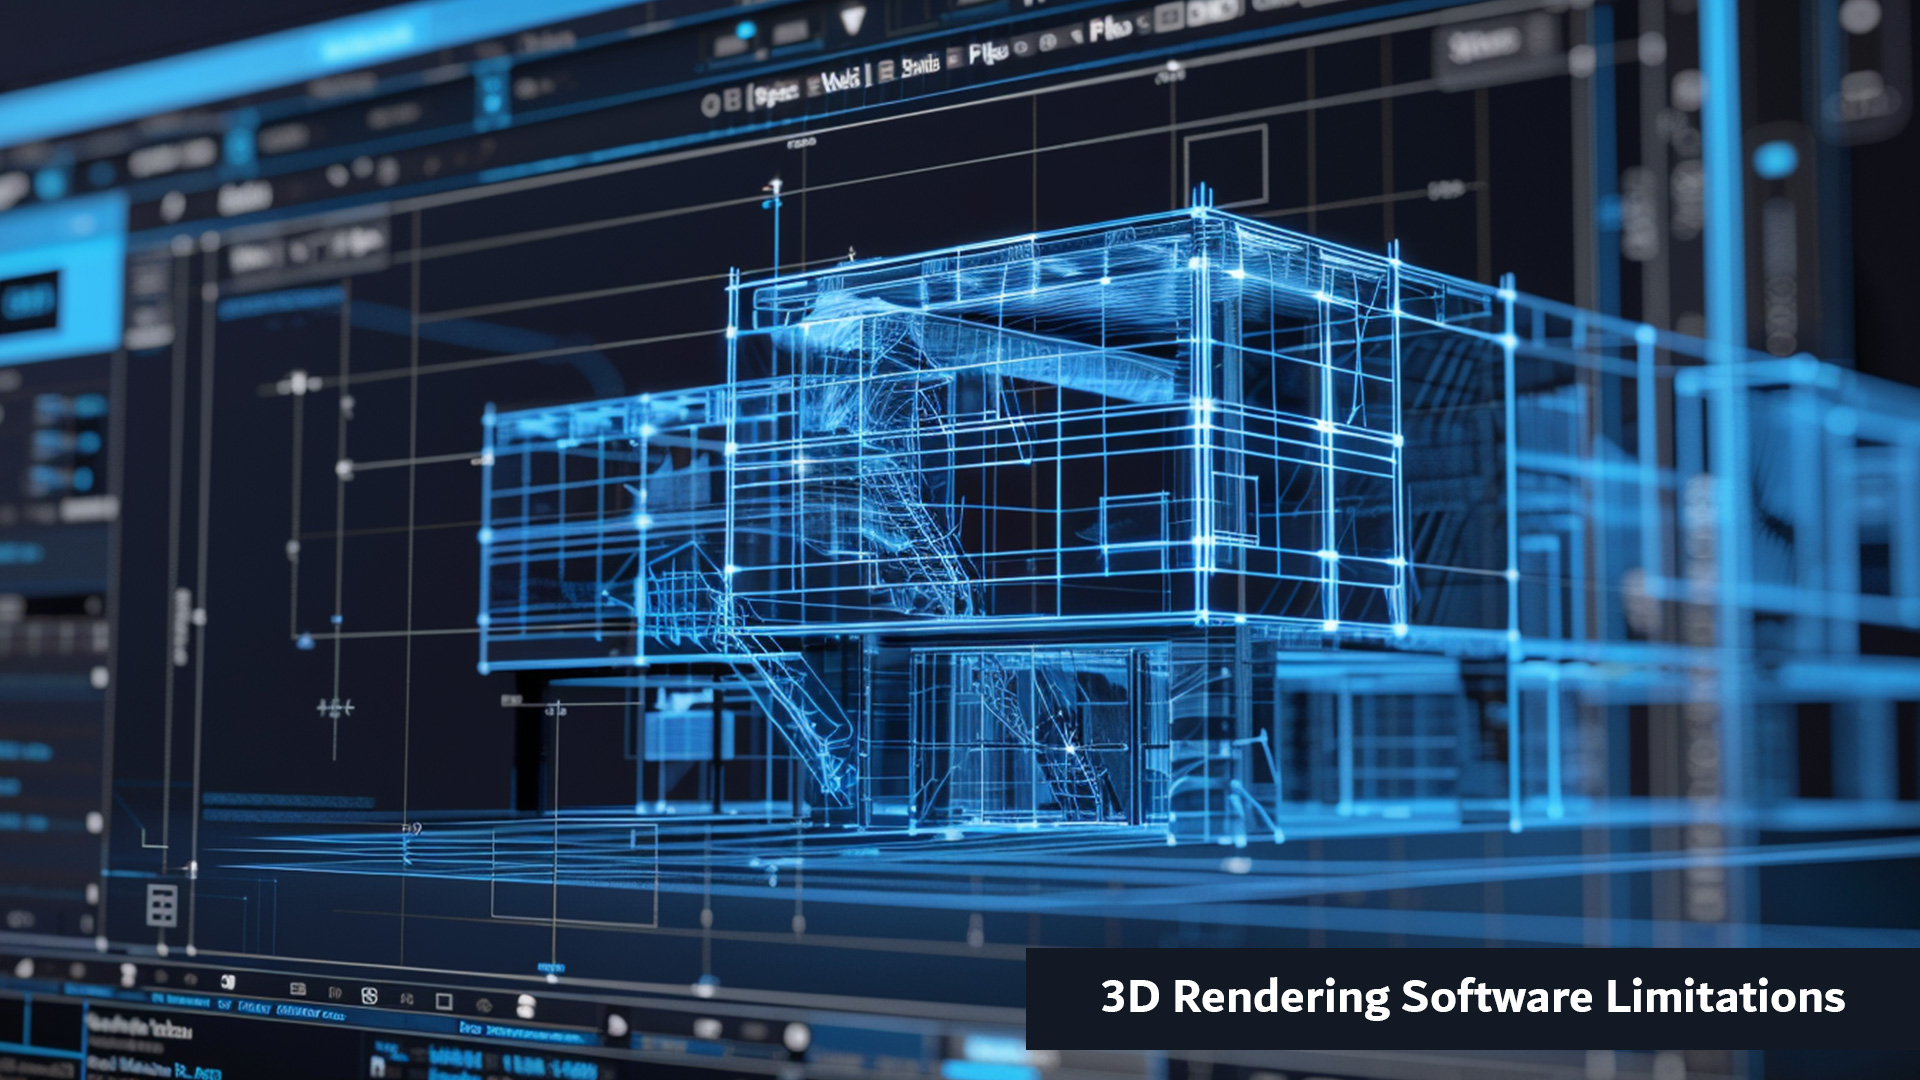 3D Rendering Software